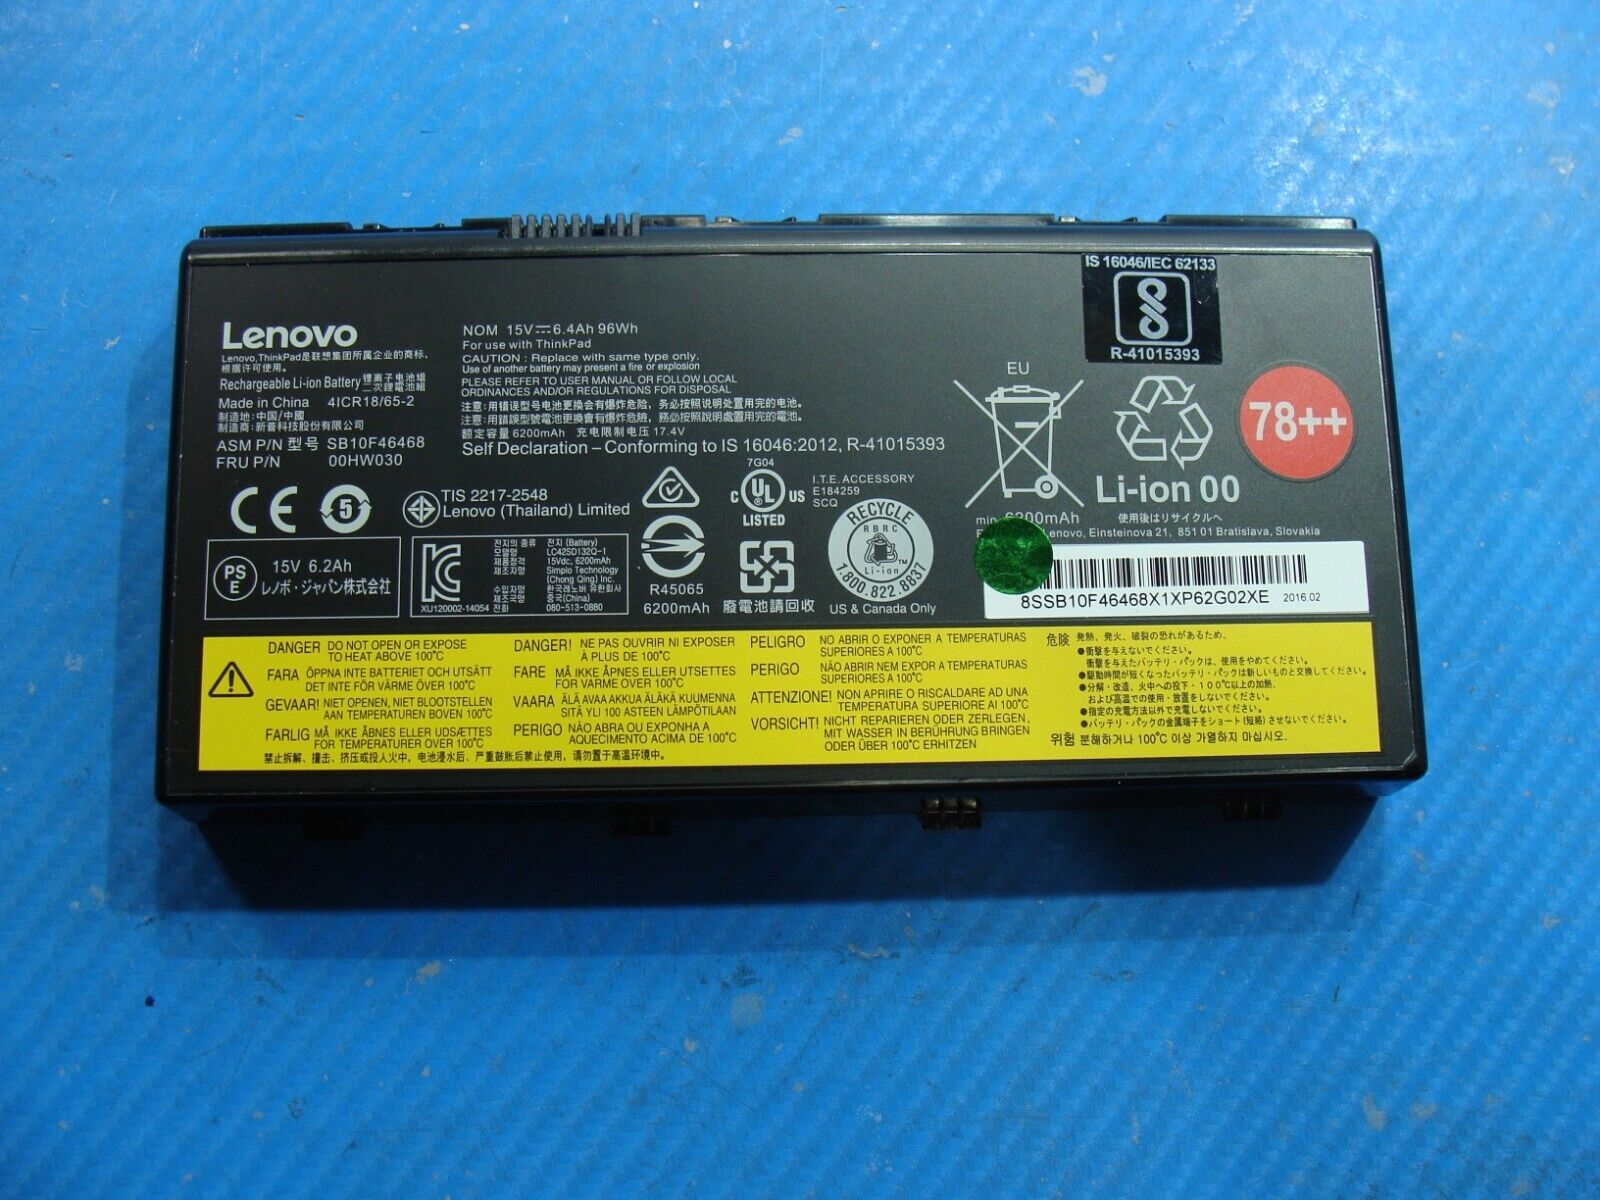 Lenovo ThinkPad P70 17.3